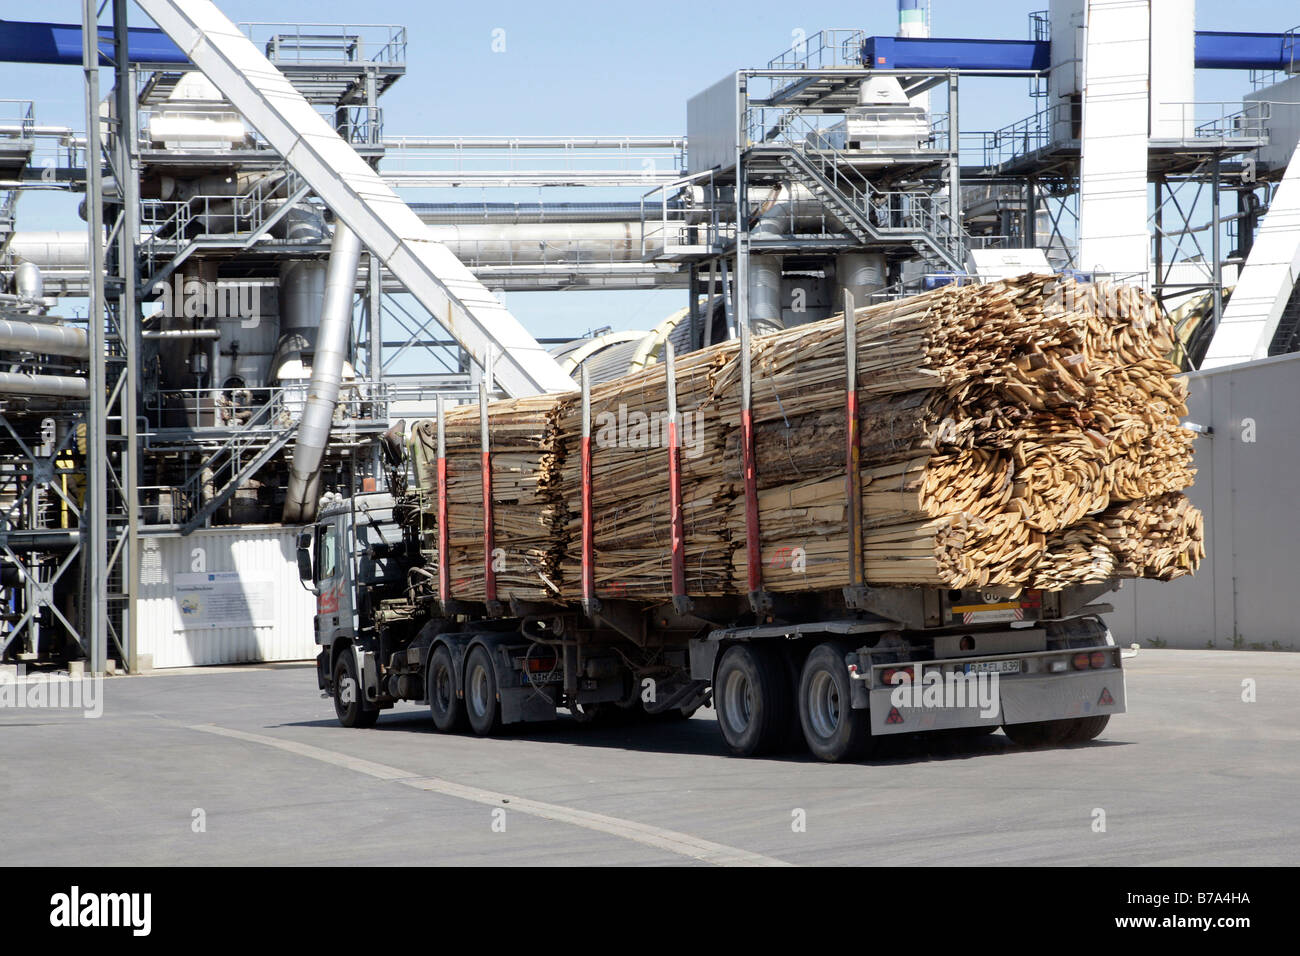 Holz Lieferung für die Herstellung von Spanplatten oder Spanplatten, Produktionsstandort der Pfleiderer AG in Neumarkt, Bayern, G Stockfoto